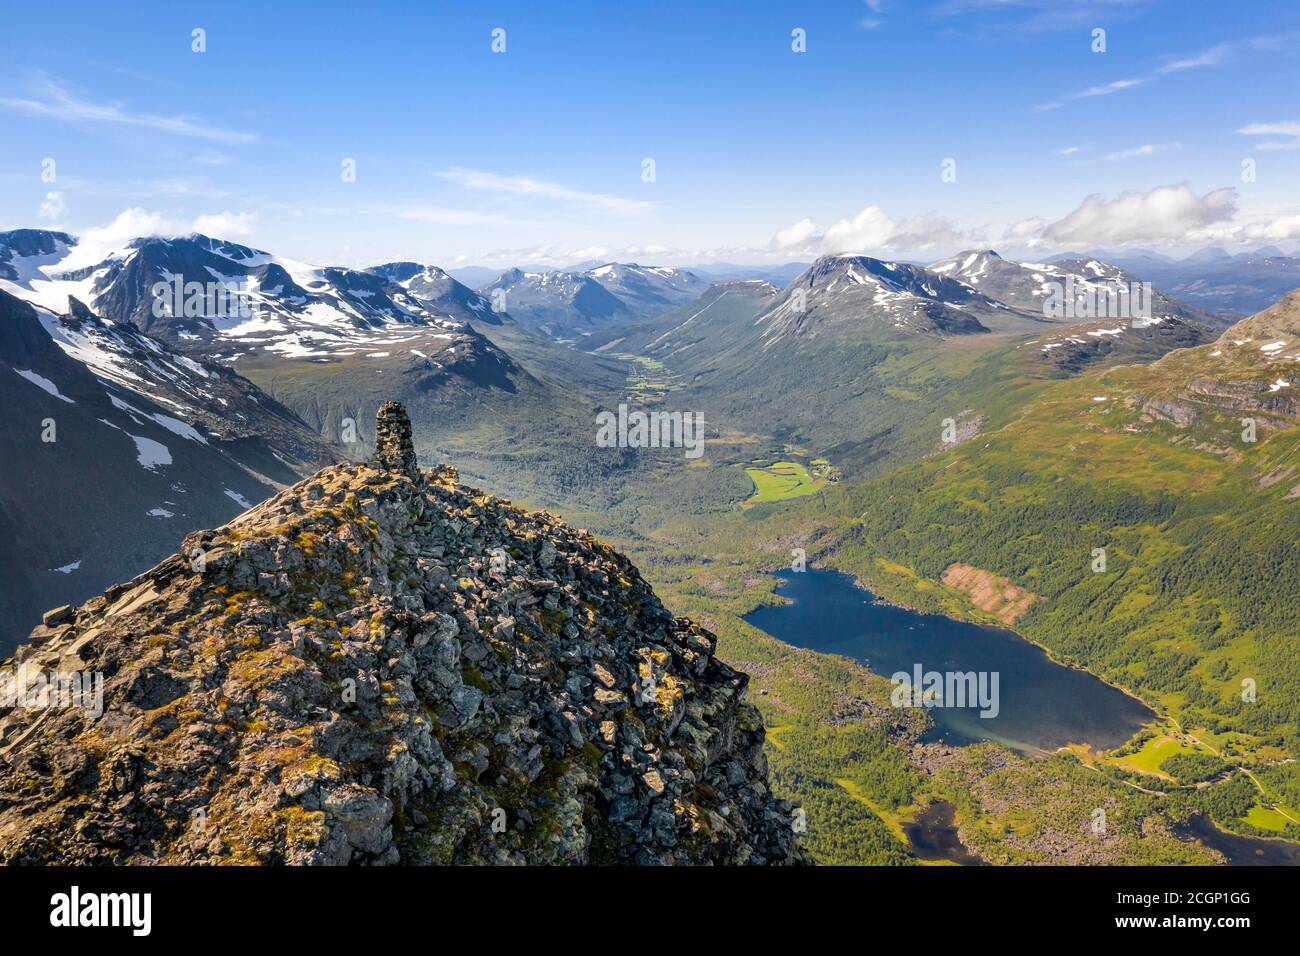 Vue aérienne, Innerdalstarnet, sommet et vue sur le lac Innerdalsvatna, Innerdalen, région de montagne Trollheimen, Sunndal, More og Romsdal, Norvège Banque D'Images